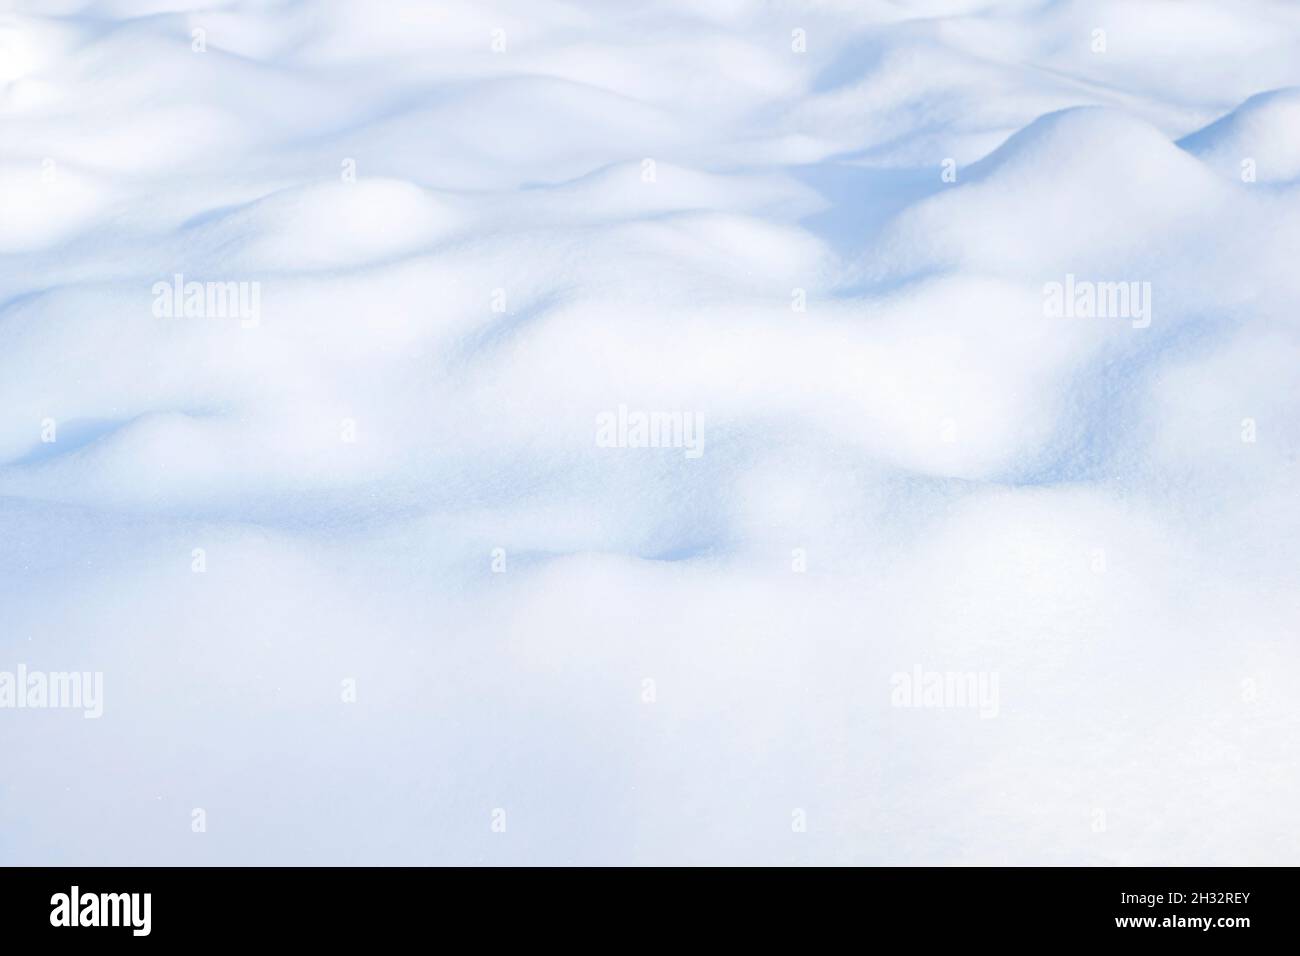 Sonniger Winter weißer Schnee Hintergrund mit blauen Schattierungen von Drifts Stockfoto